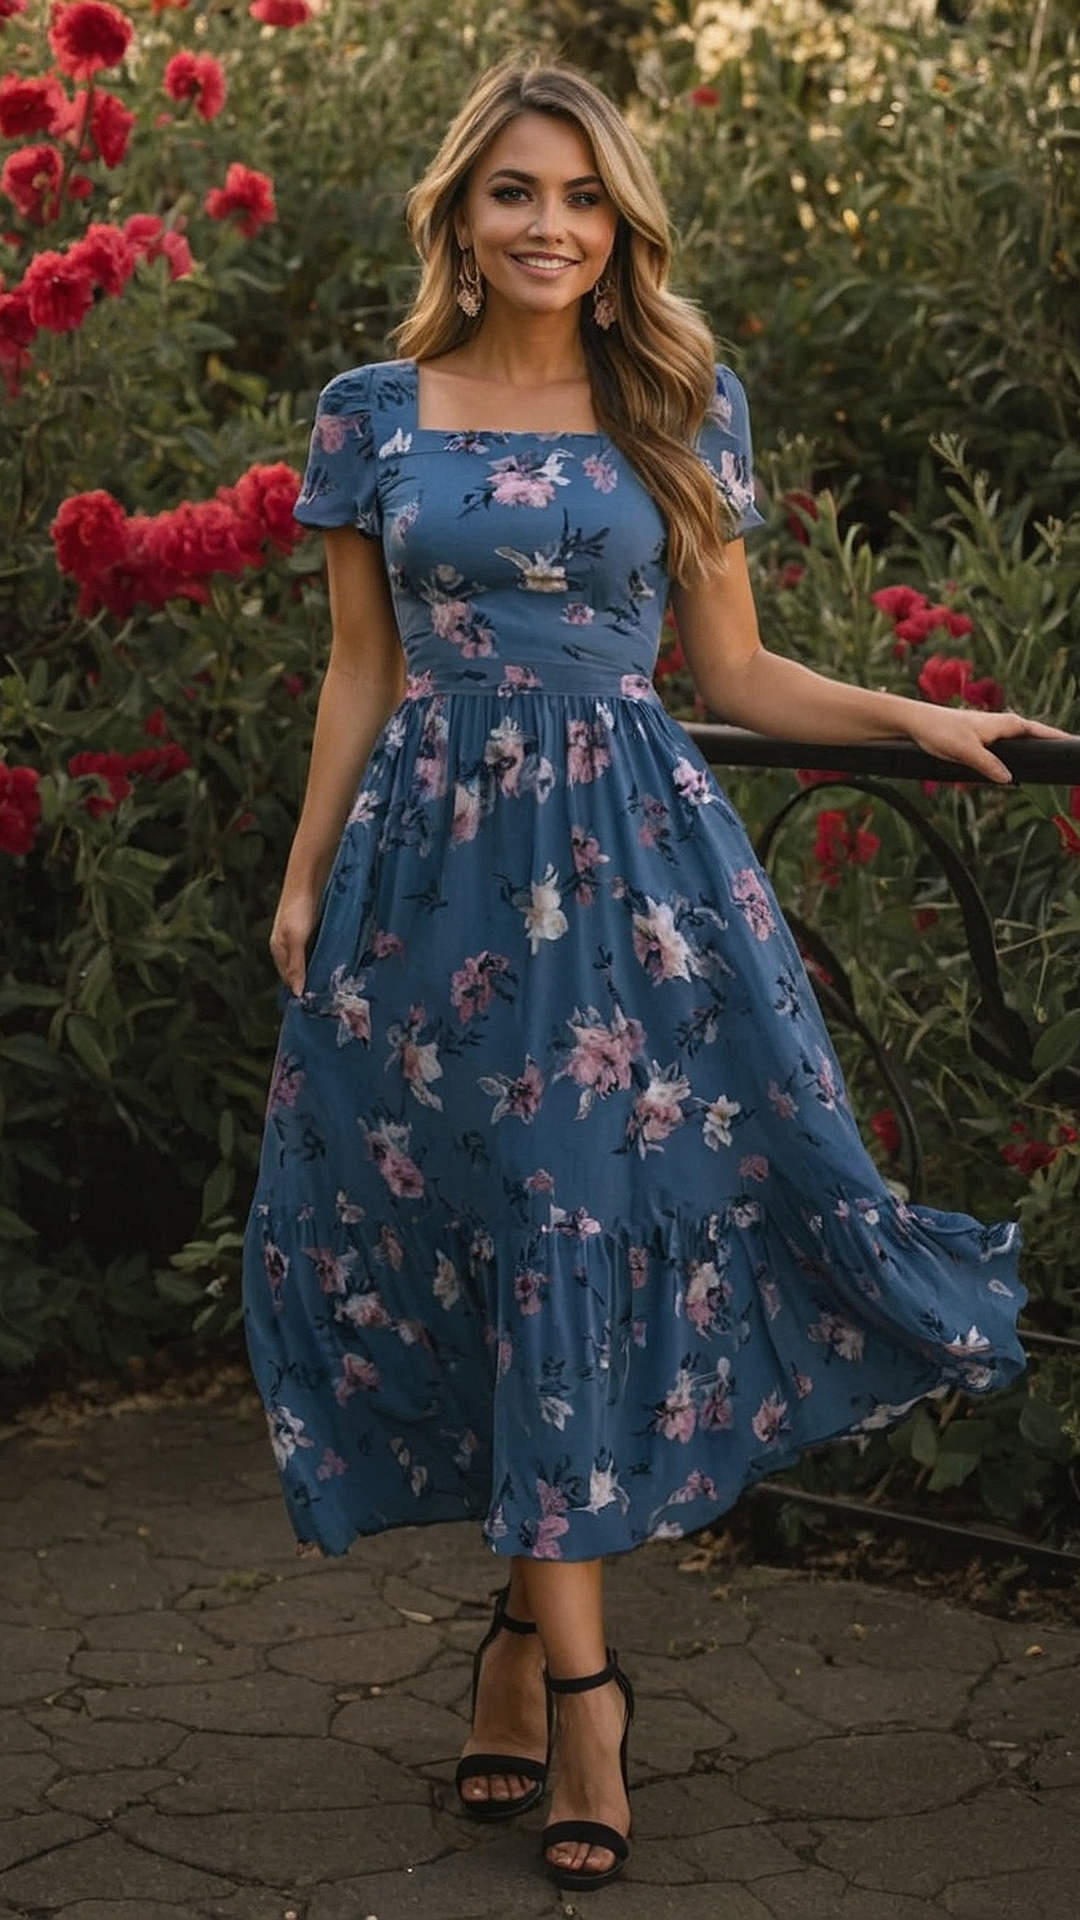 Tropical Tendencies: Vibrant Floral Maxi Dress Ideas